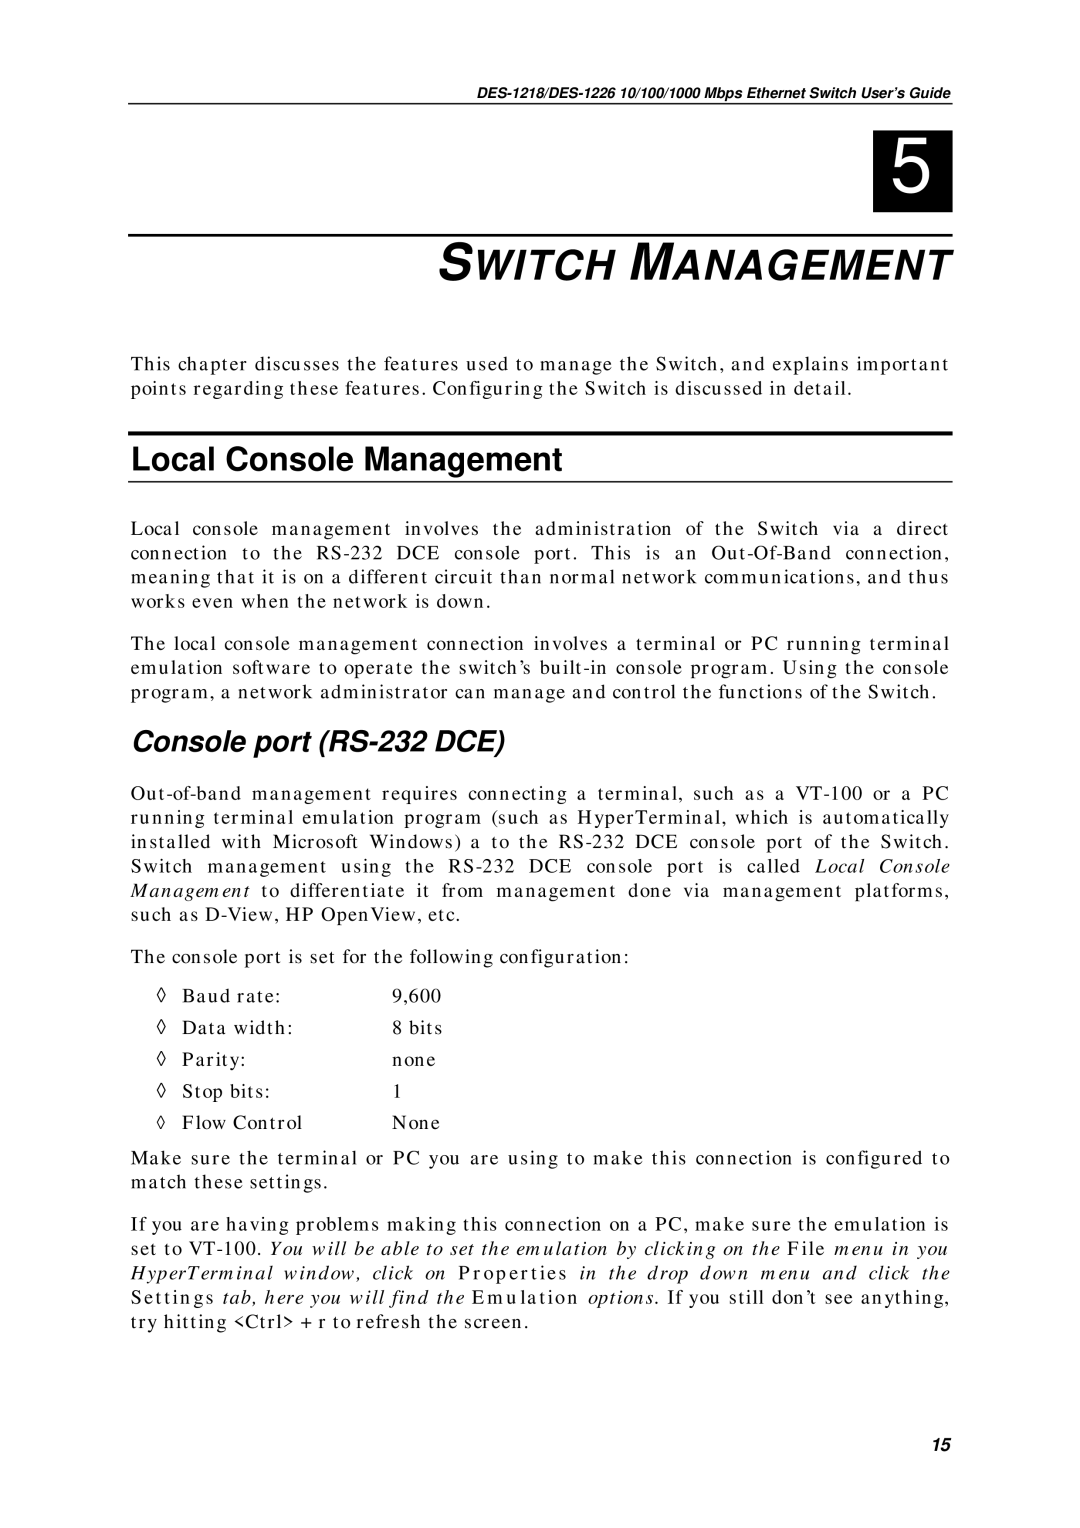 D-Link DES1226, DES-1218 manual Switch Management, Local Console Management, Console port RS-232 DCE 